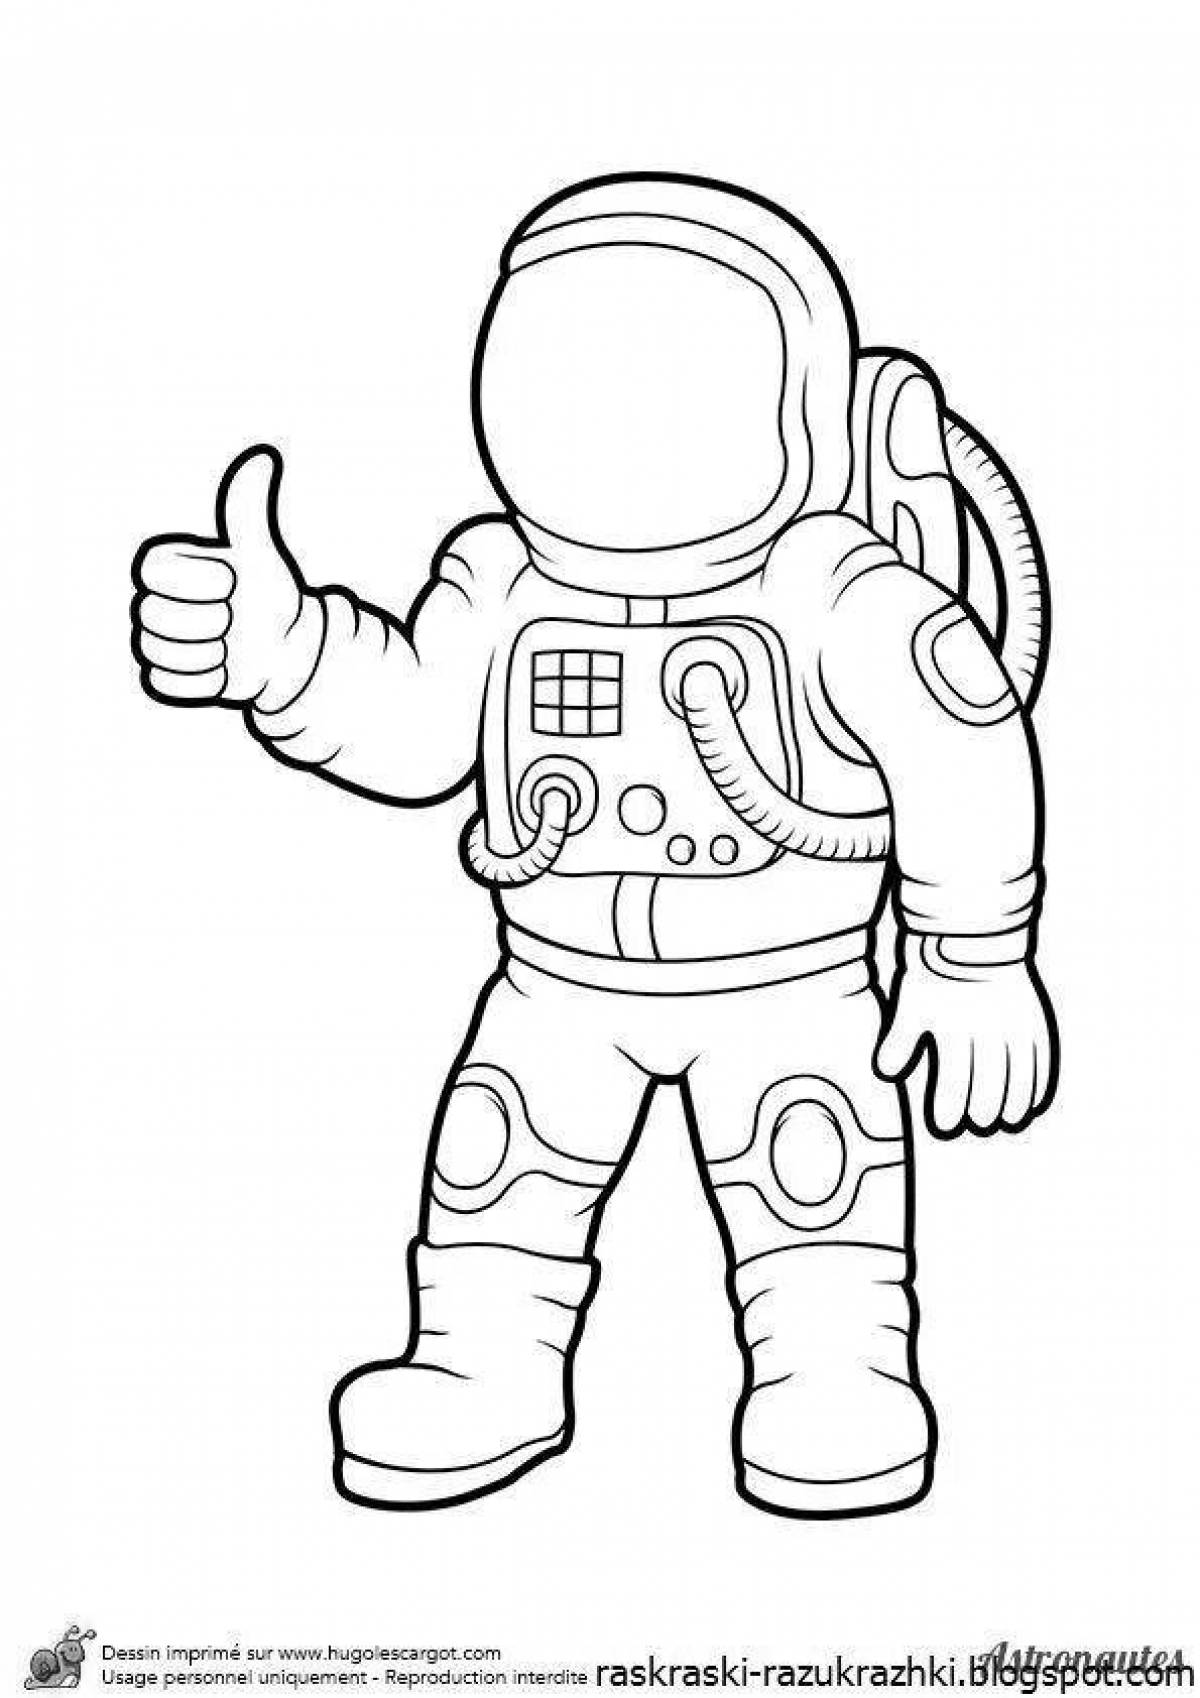 Причудливая раскраска космонавта для детей